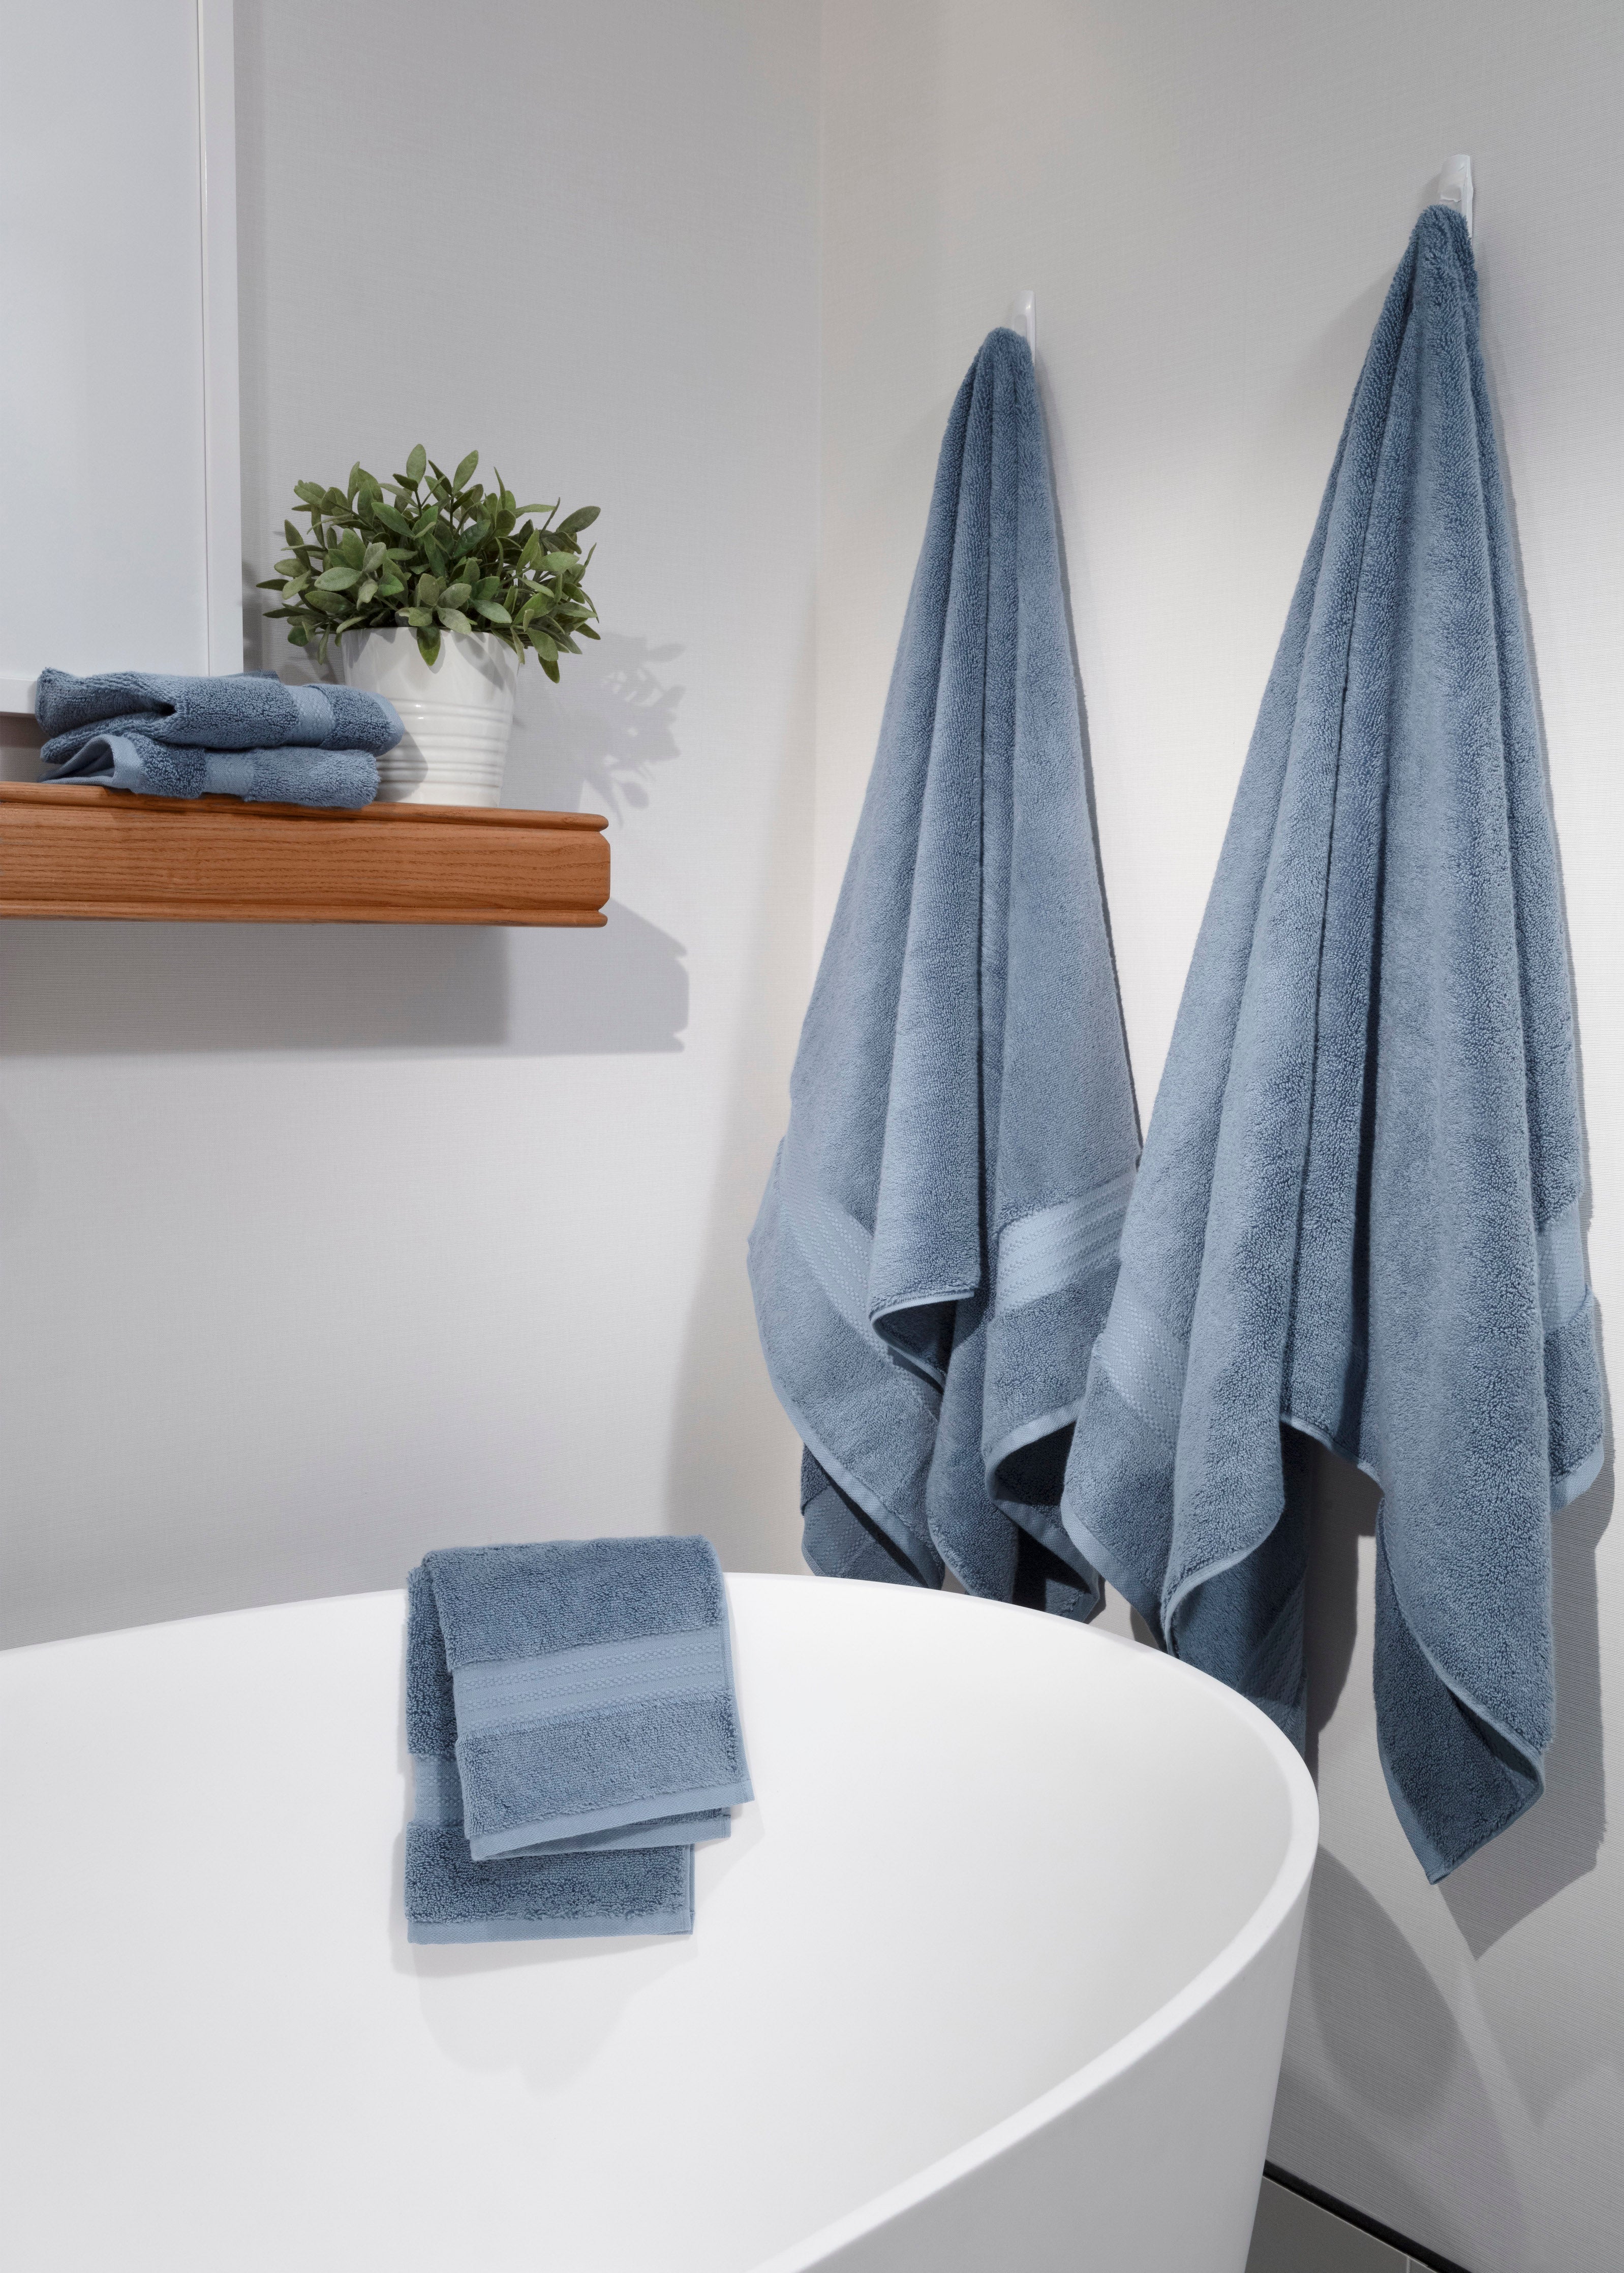 575 GSM Caress Ultra Absorbent Cotton Bath Towel Set or Bath Sheet Set